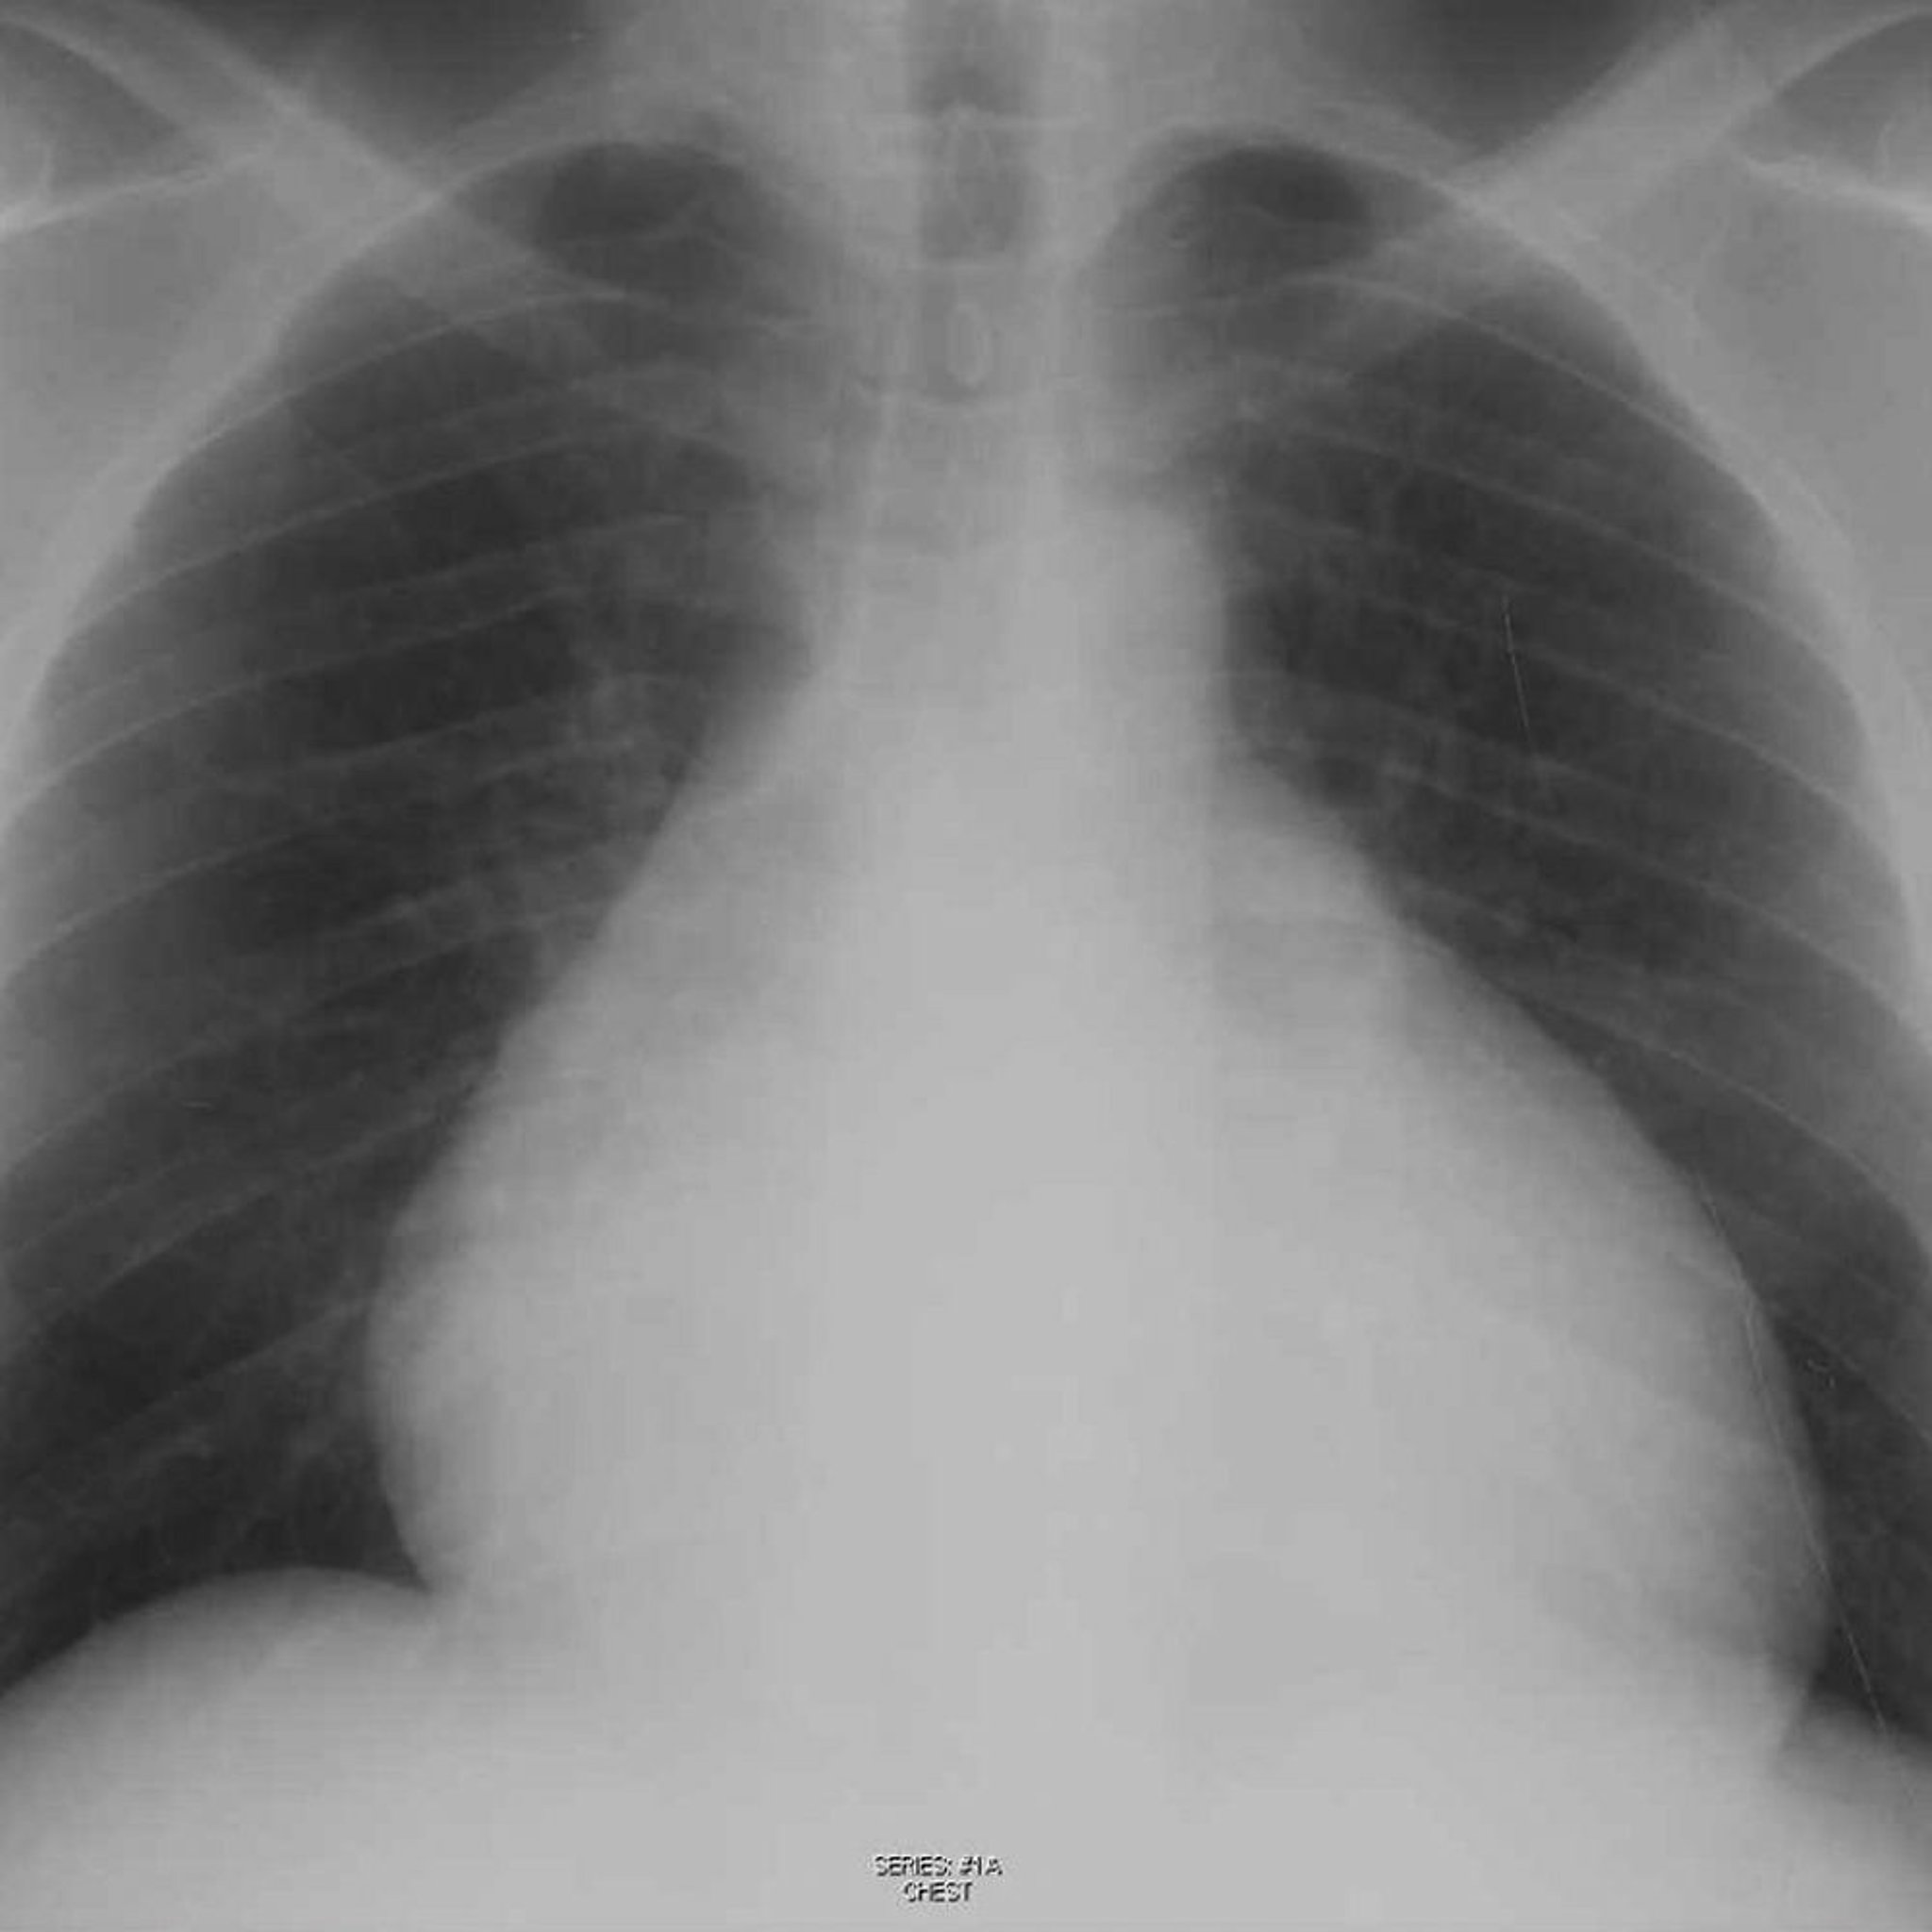 Röntgenthorax eines Patienten mit Perikarderguss